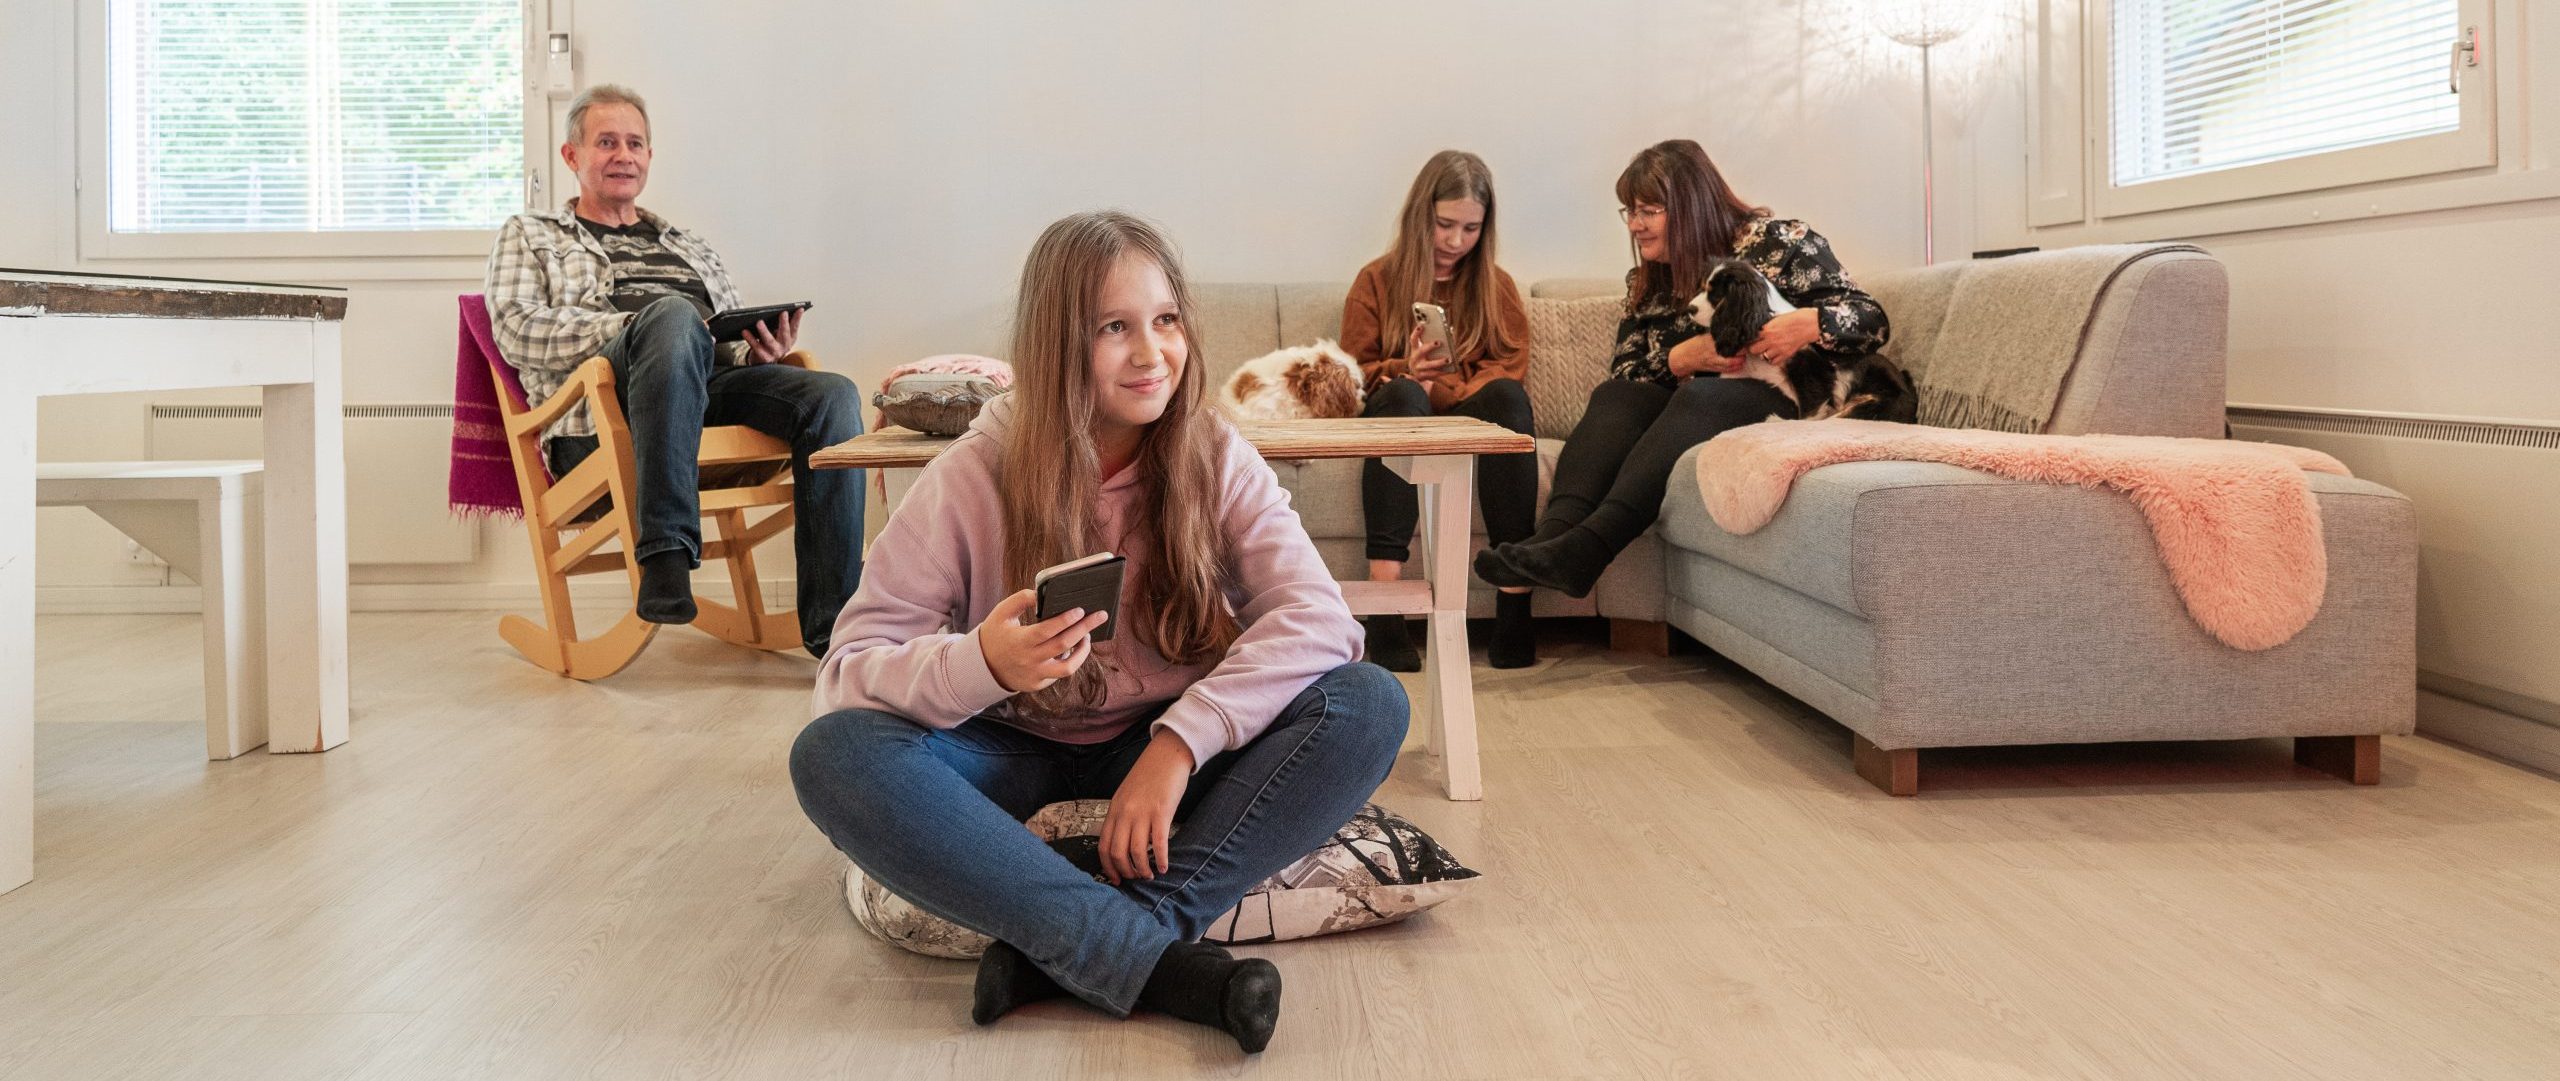 PyhäNetin verkkopalvelu ja Maxivisionin TV-palvelu= täydellinen yhdistelmä